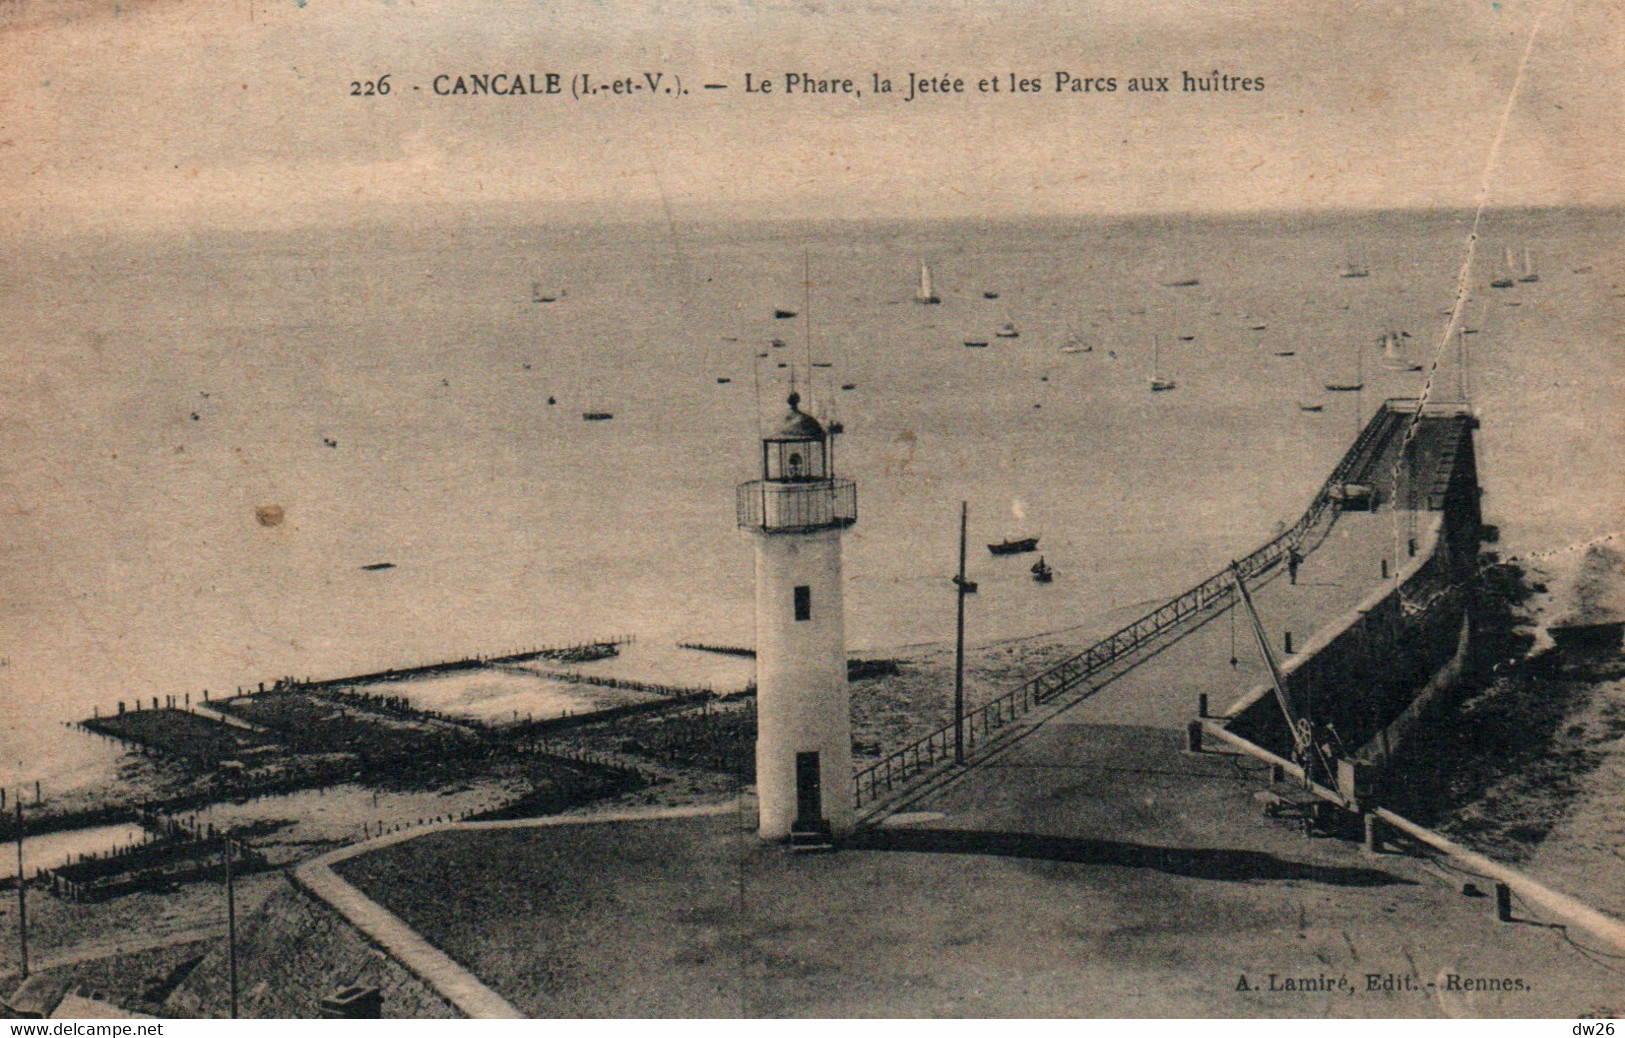 Cancale (Ile-et-Vilaine) Le Phare, La Jetée Et Les Parcs à Huîtres - Edition Lamire, Carte N° 226 - Faros